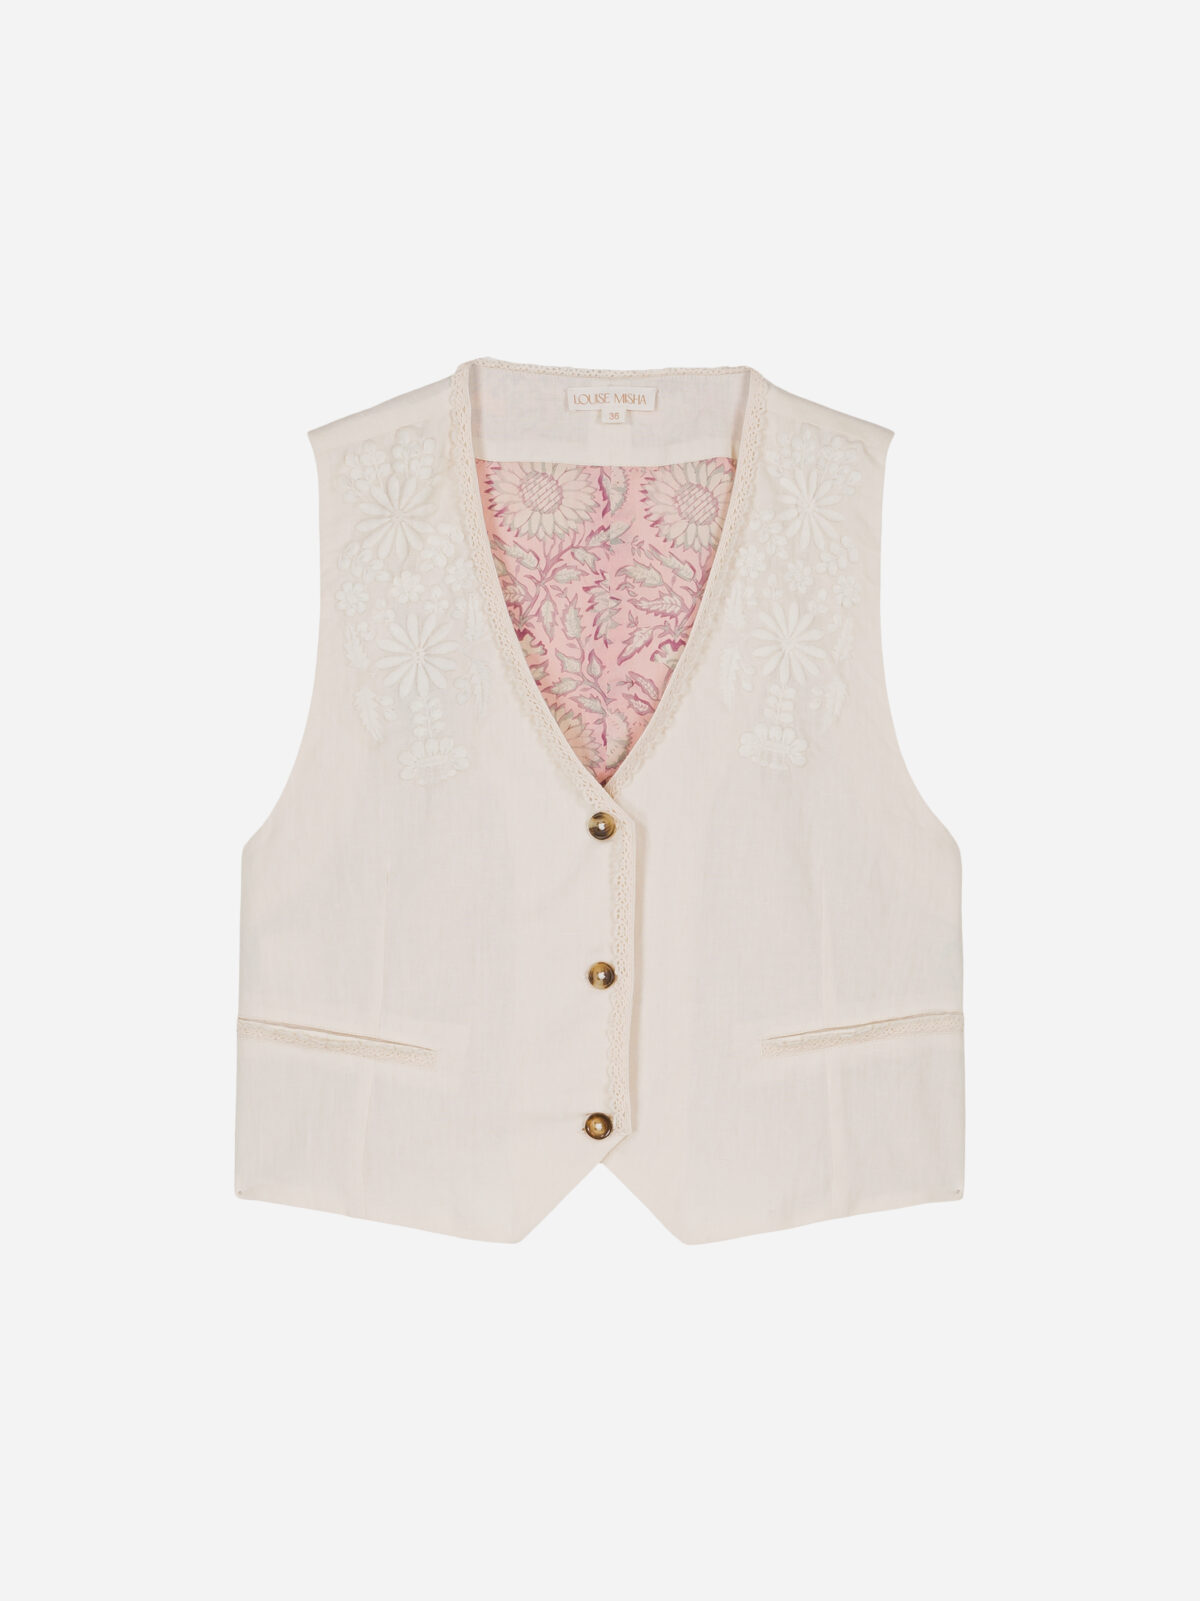 FRANKIE-GILET-cream-vest-linen-cotton-waistcoat-embroideries-lace-louise-misha-matchboxathens